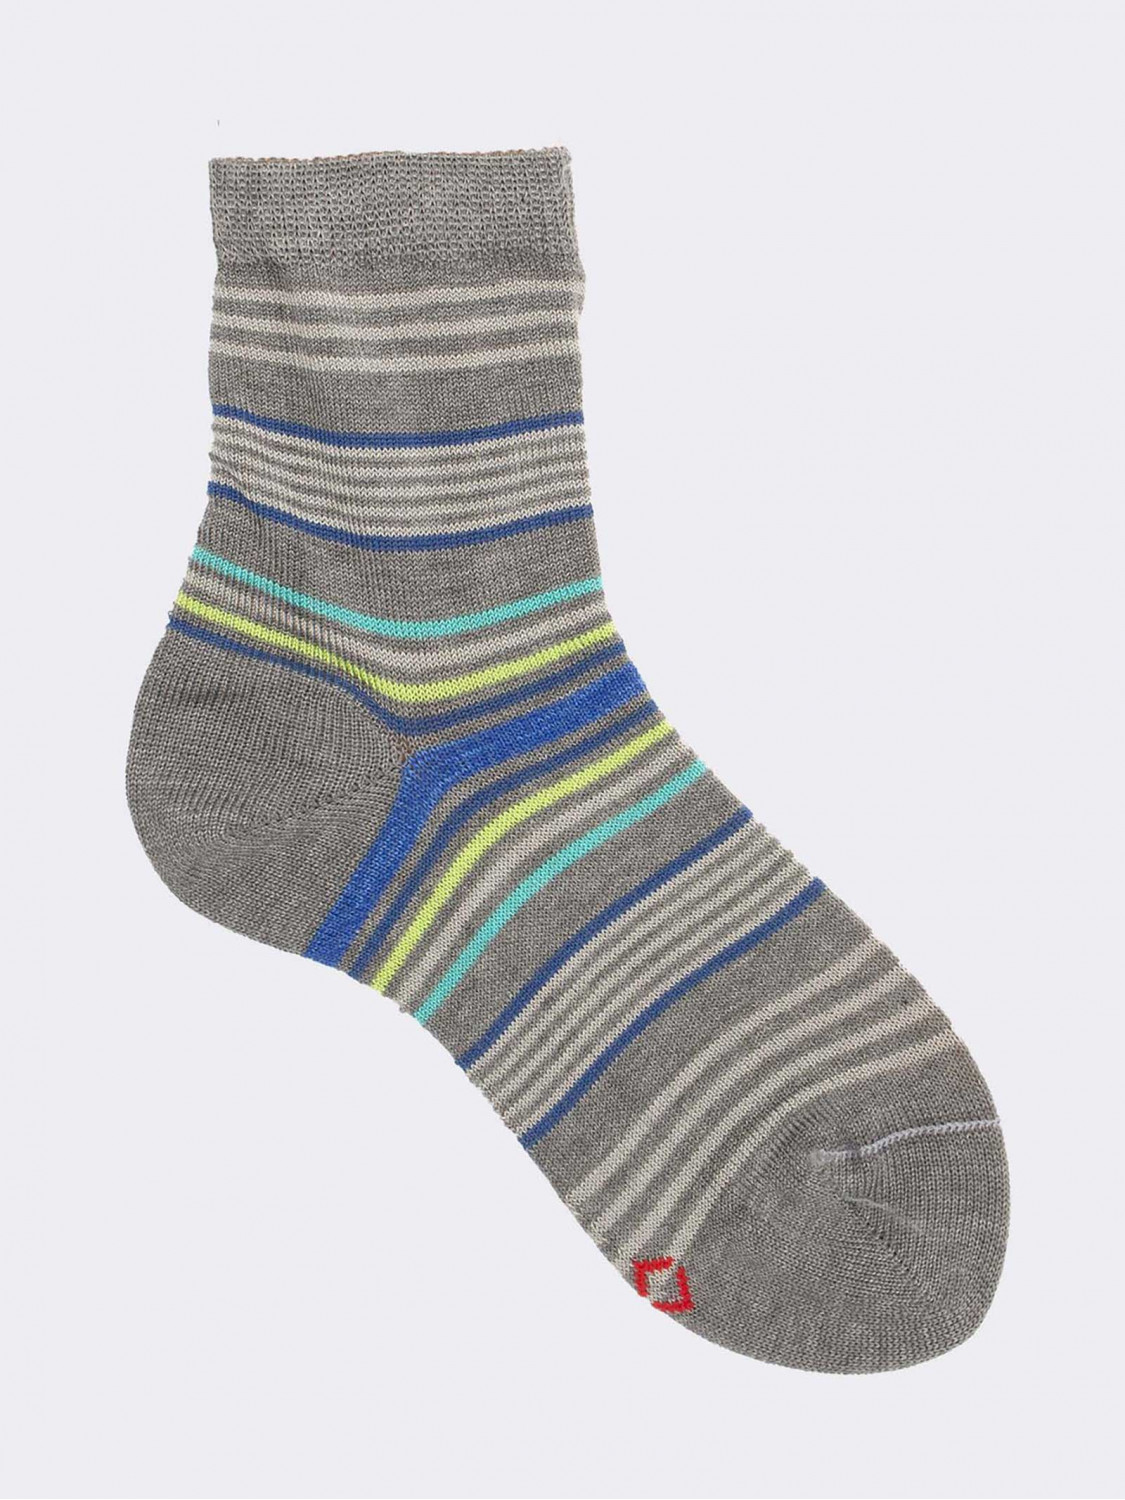 Gestreifte kurze Socken für Jungen aus kühler Baumwolle